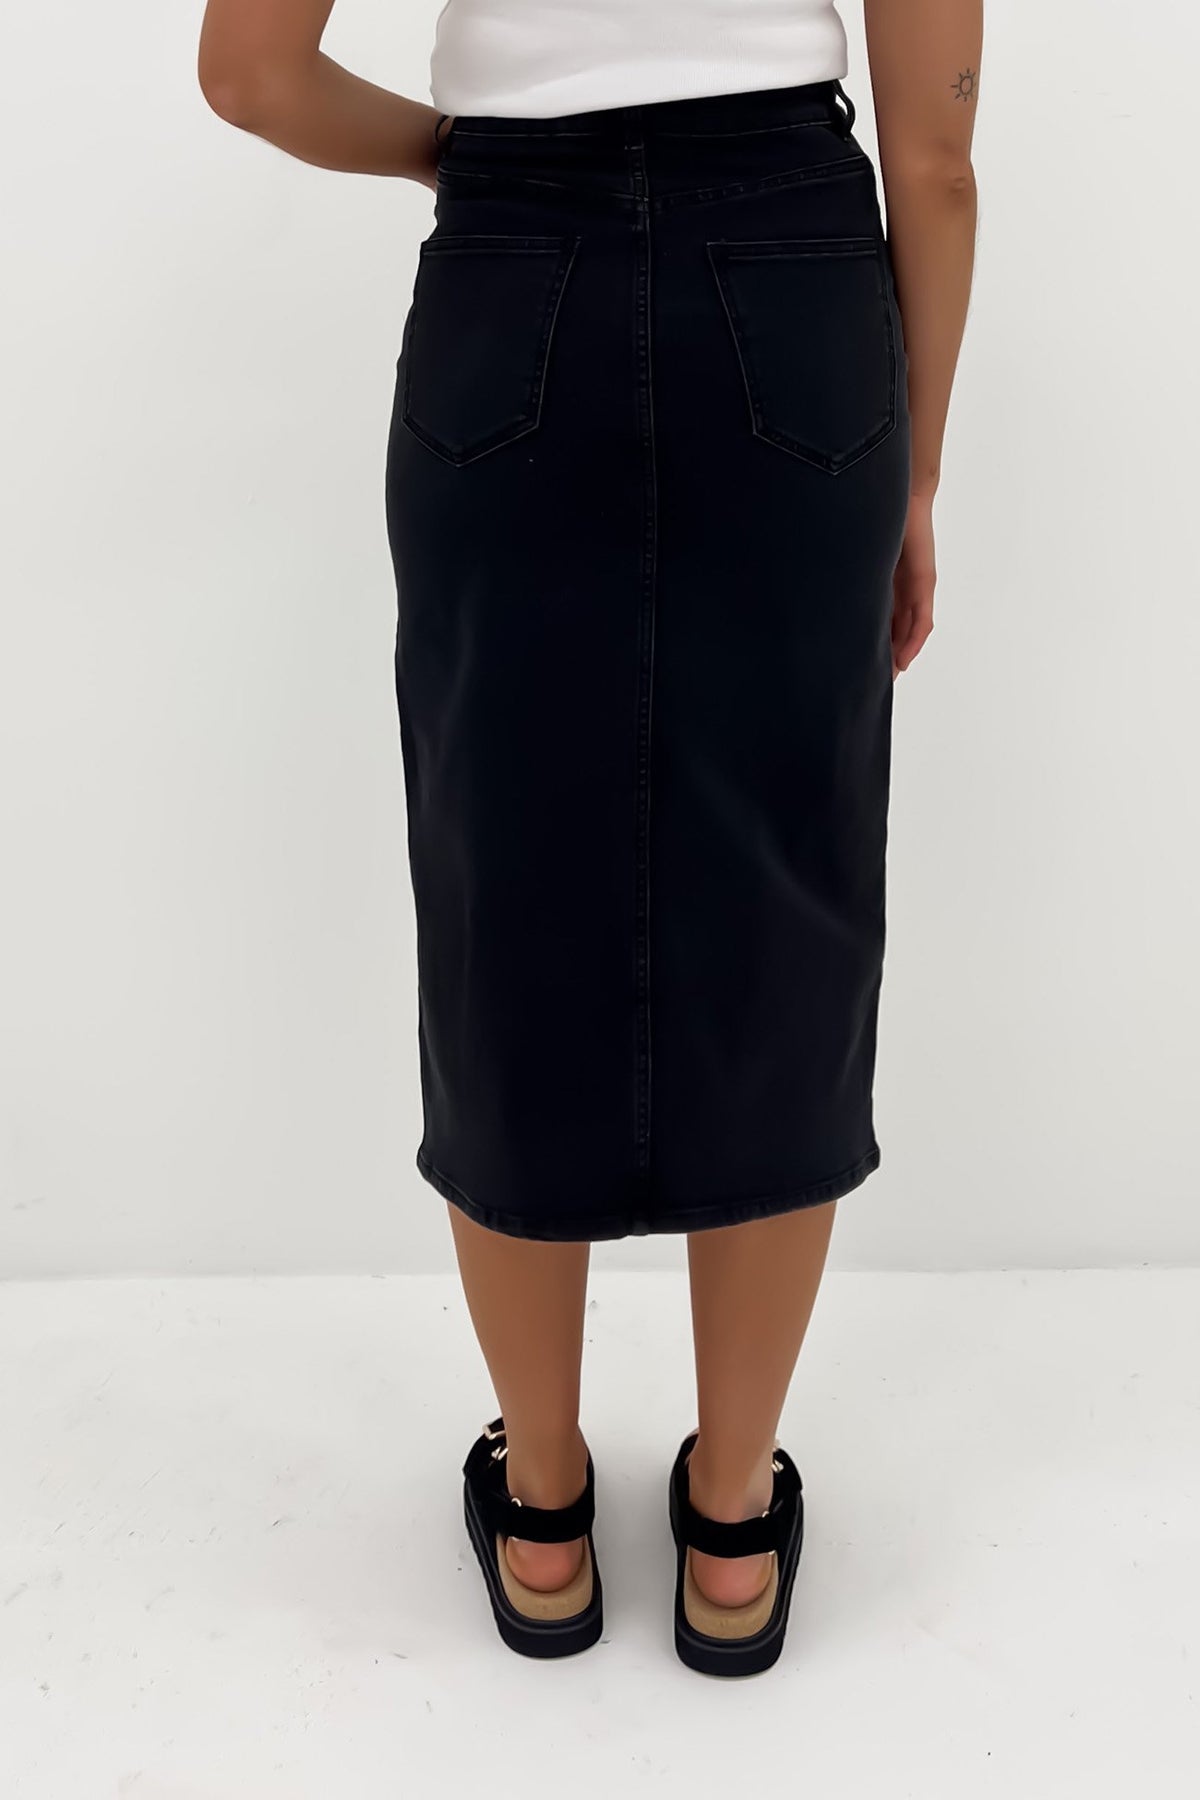 Simmi corset top and maxi pencil skirt set in tan